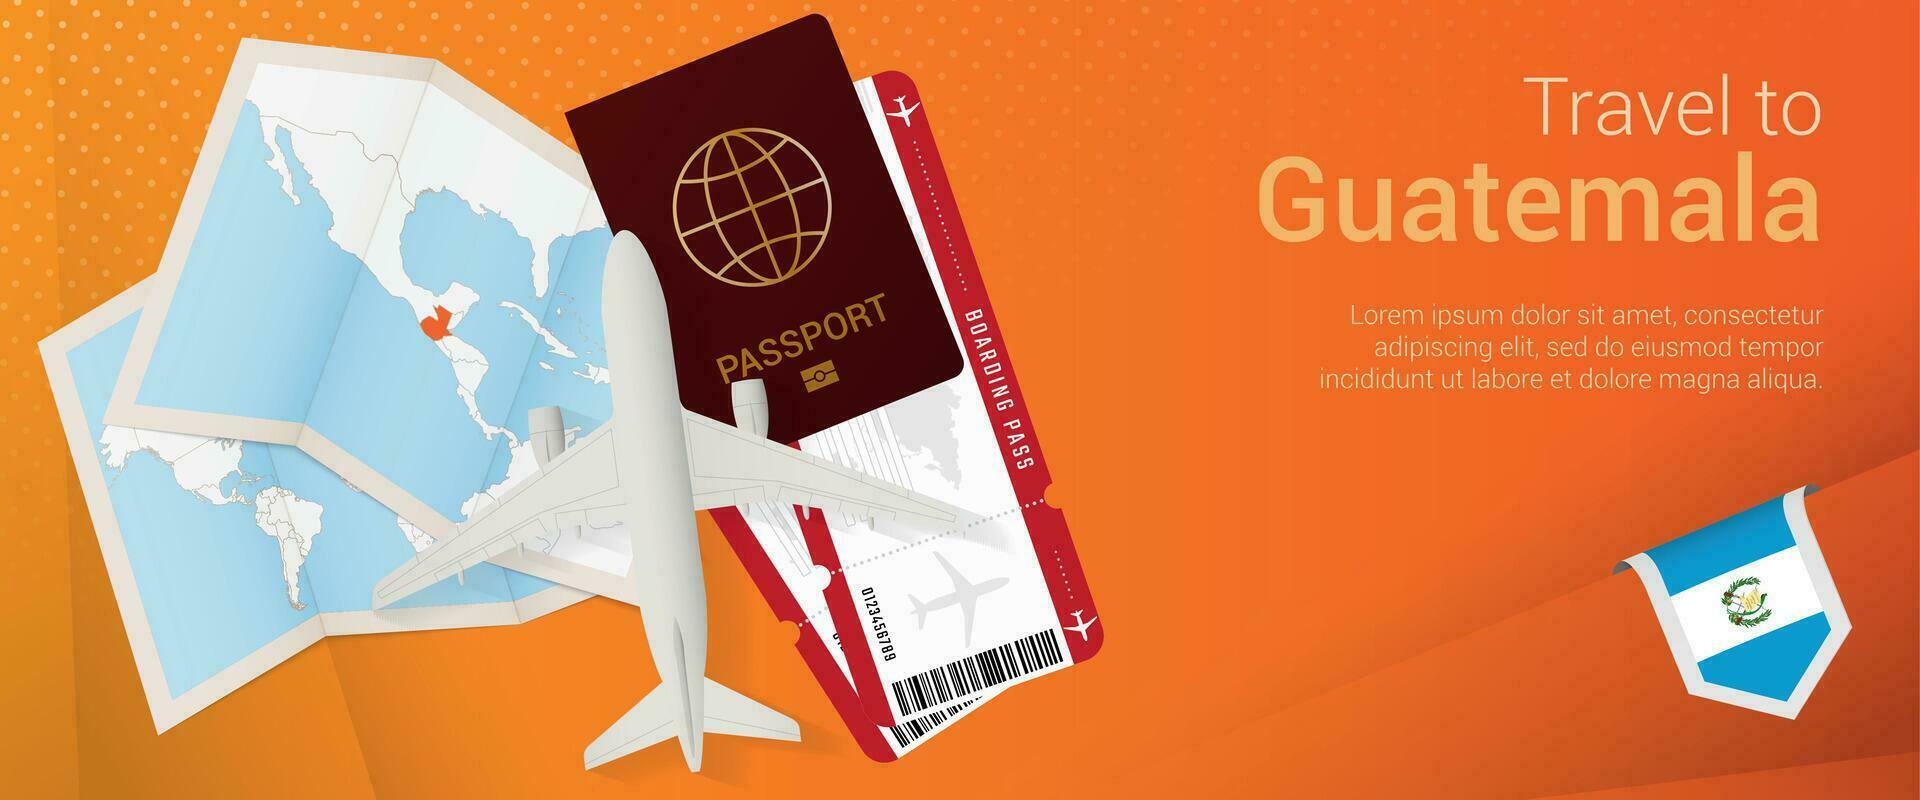 viaje a Guatemala pop-under bandera. viaje bandera con pasaporte, Entradas, avión, embarque aprobar, mapa y bandera de Guatemala. vector